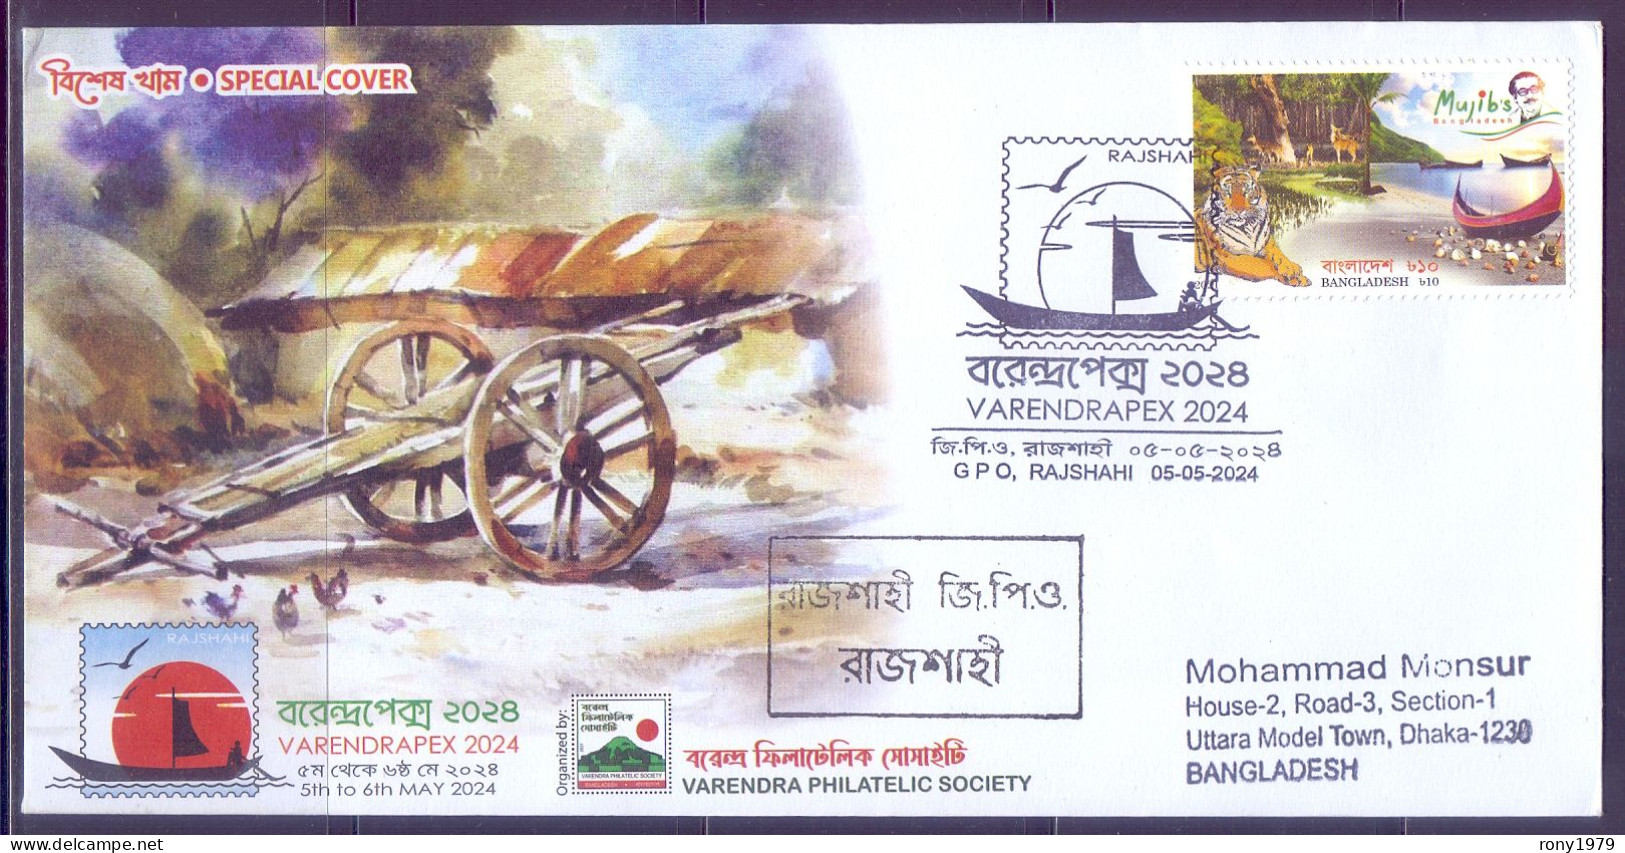 Bangladesh 2024 Varendrapex Stamp Exhibition Wheelbarrow Rooster Village Hut Sail Boat REG Special Cover Pictorial PM-1 - Briefmarkenausstellungen